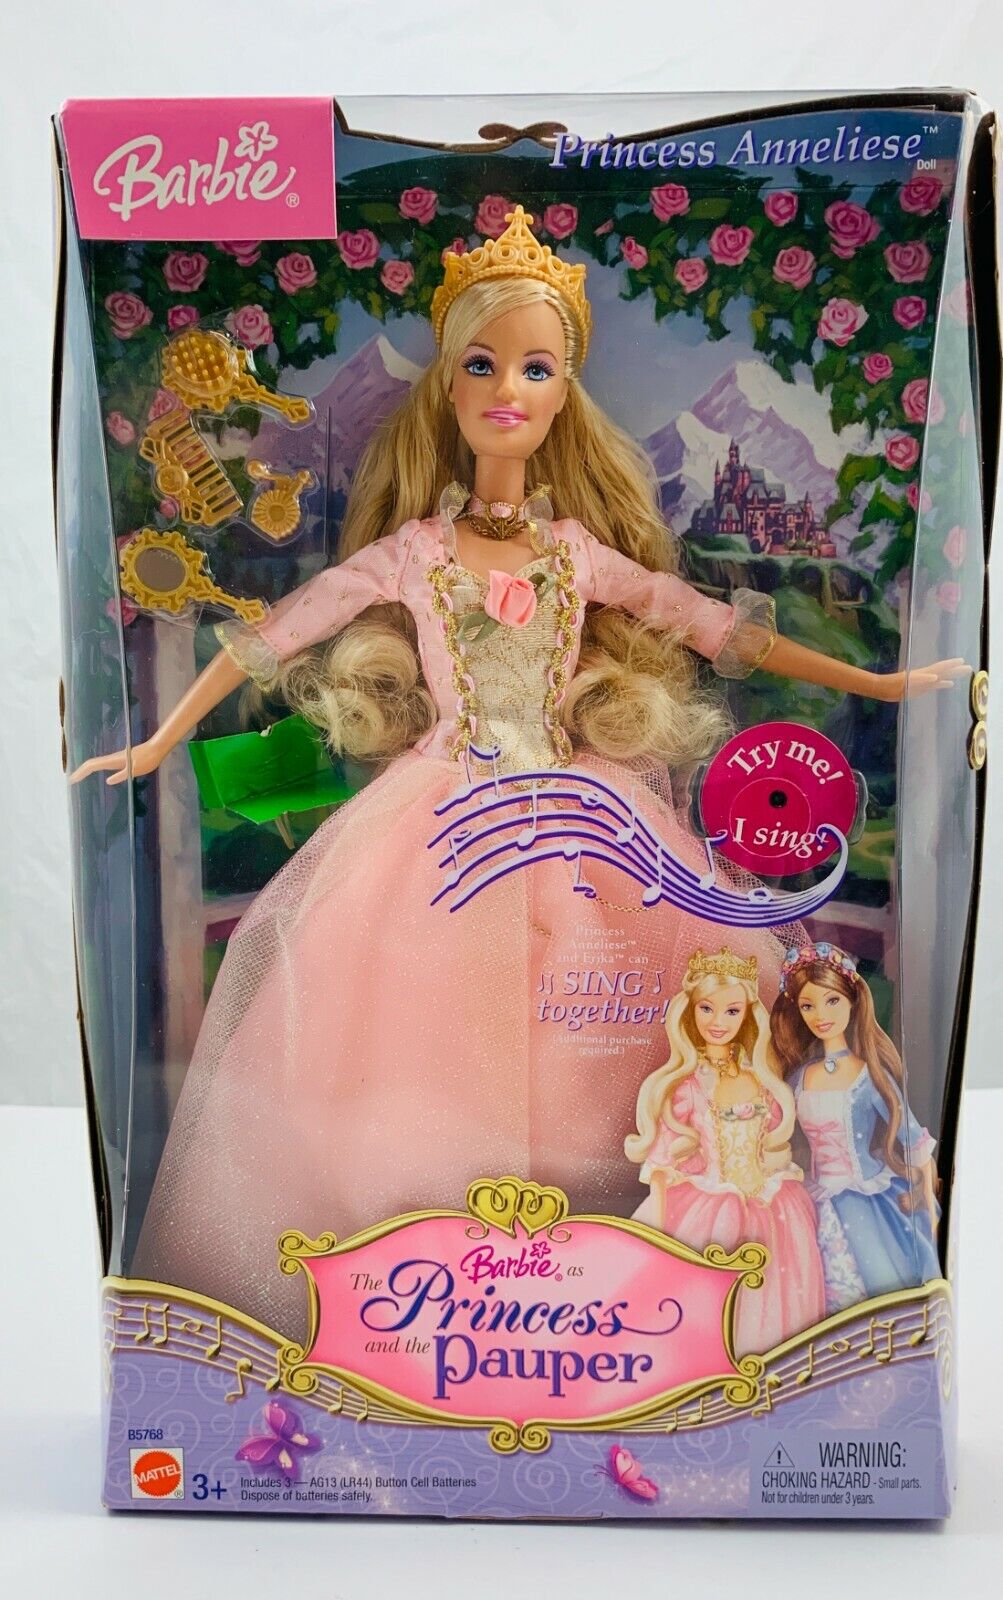 Barbie Coeur de Princesse (The Princess and the Pauper) - Princesse Anneliese - poupée musicale - Mattel 2004 - Accessoires